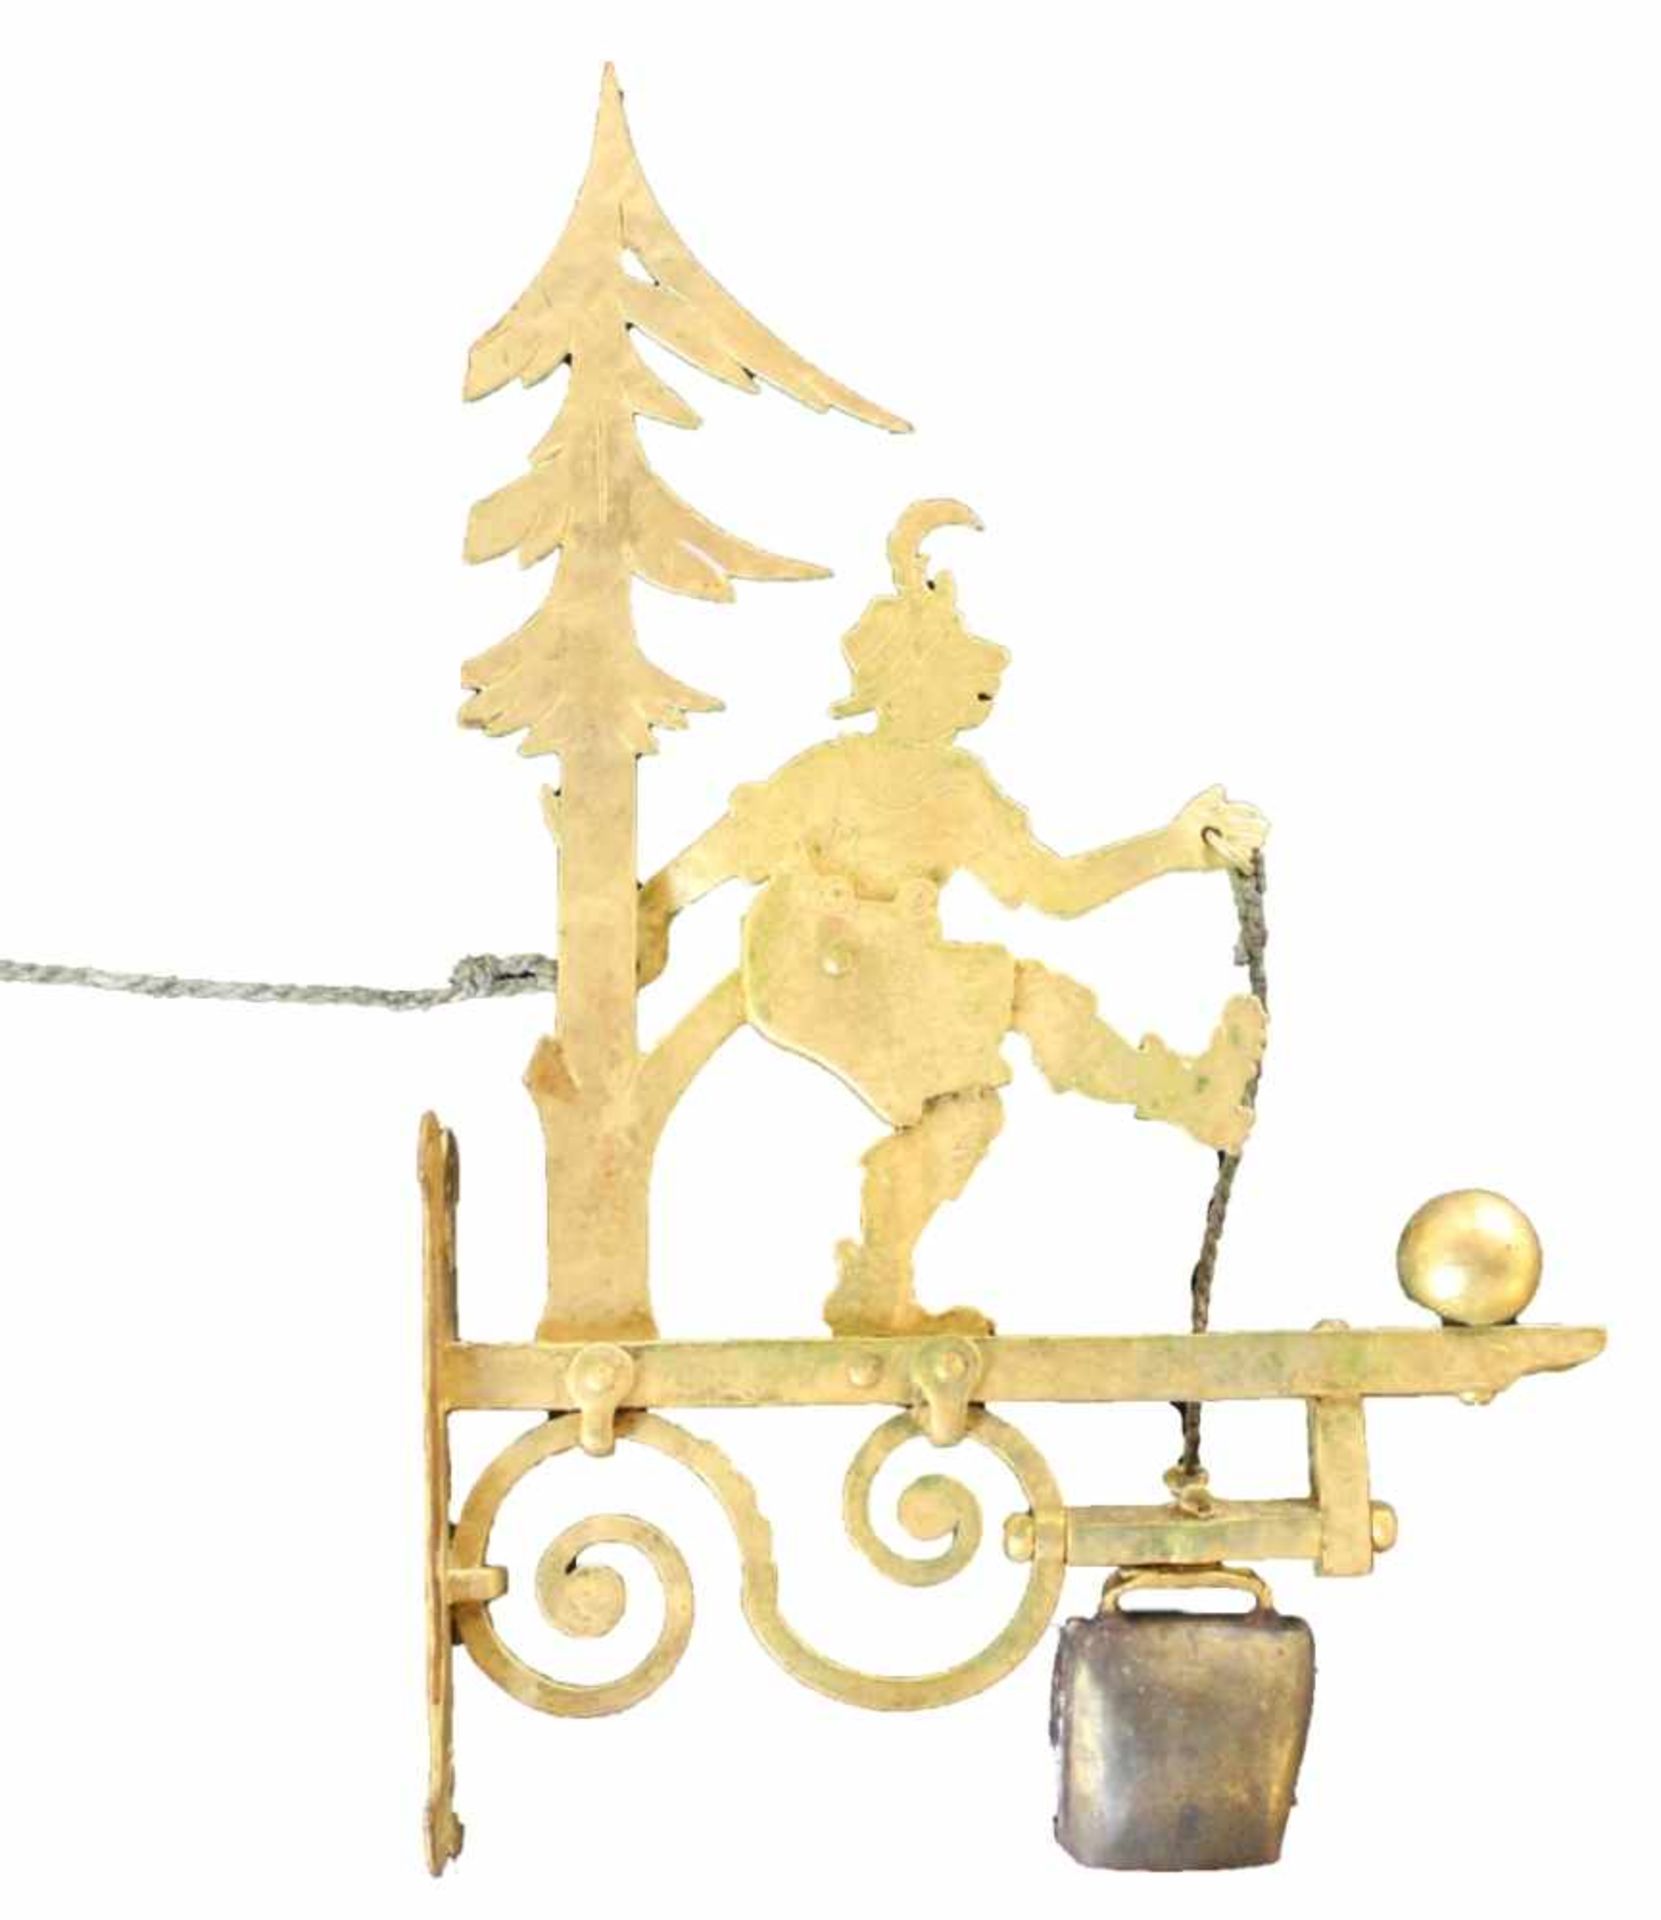 Hausglocke mit vergoldetem Metallschild und figürlicher Darstellung, Glockenzug über bewegliche "